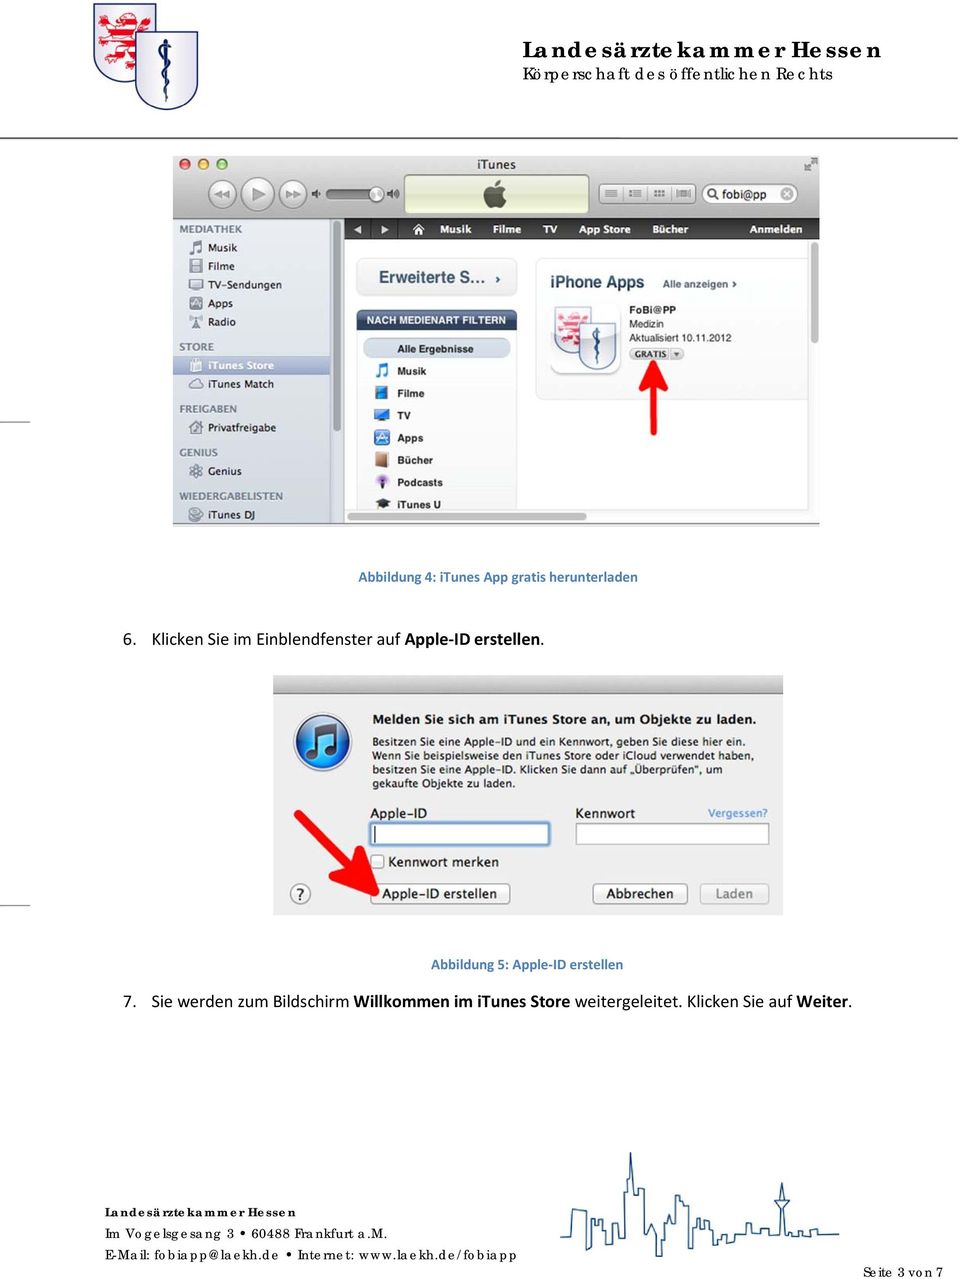 Abbildung 5: Apple ID erstellen 7.